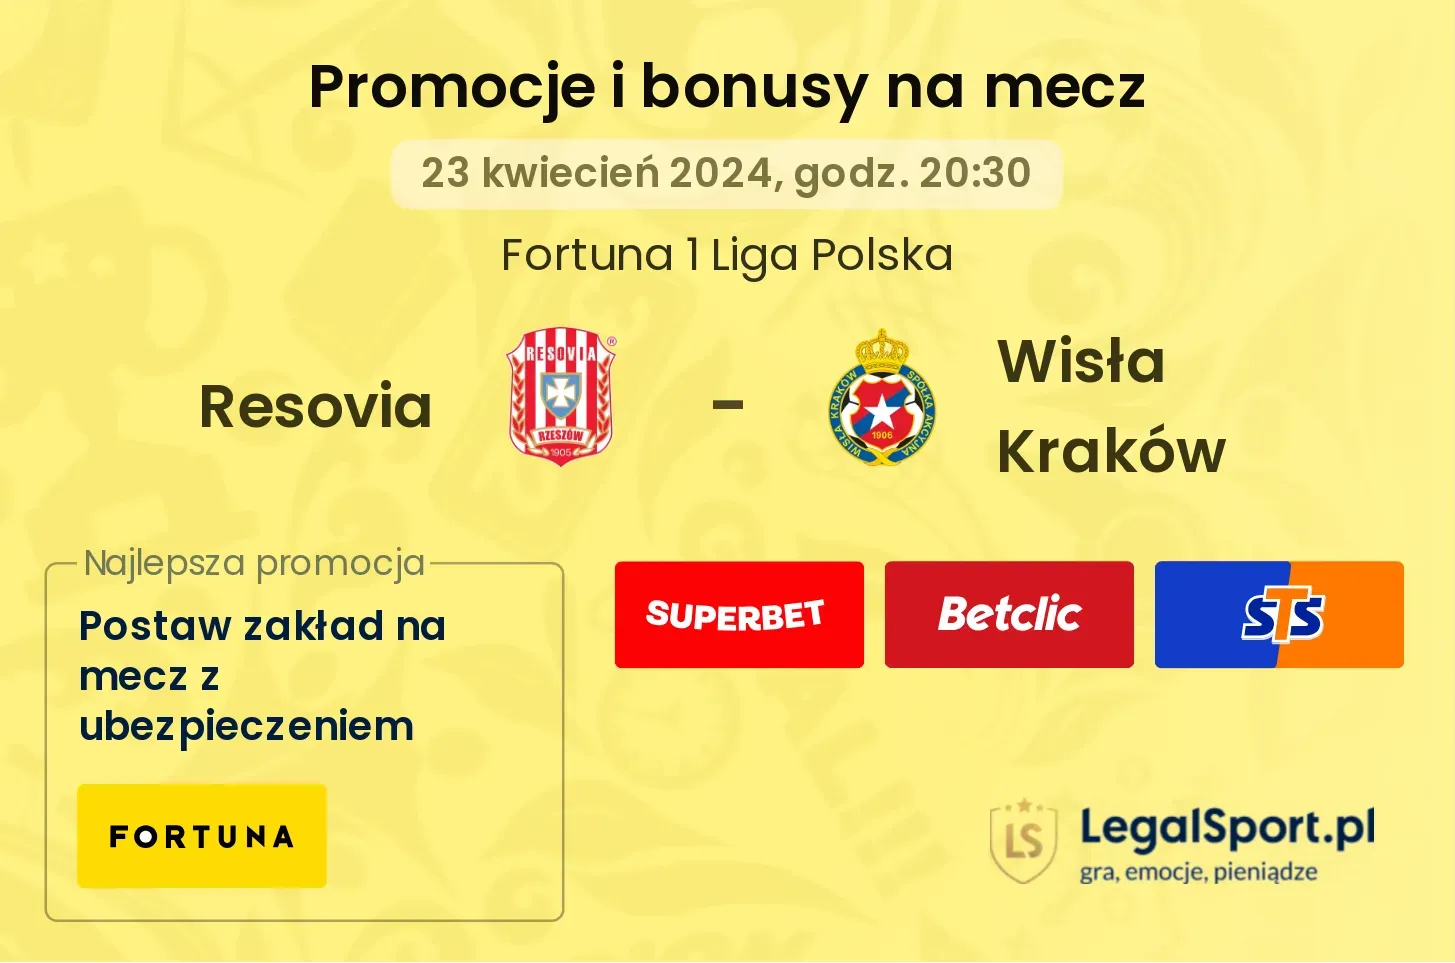 Resovia - Wisła Kraków promocje bonusy na mecz